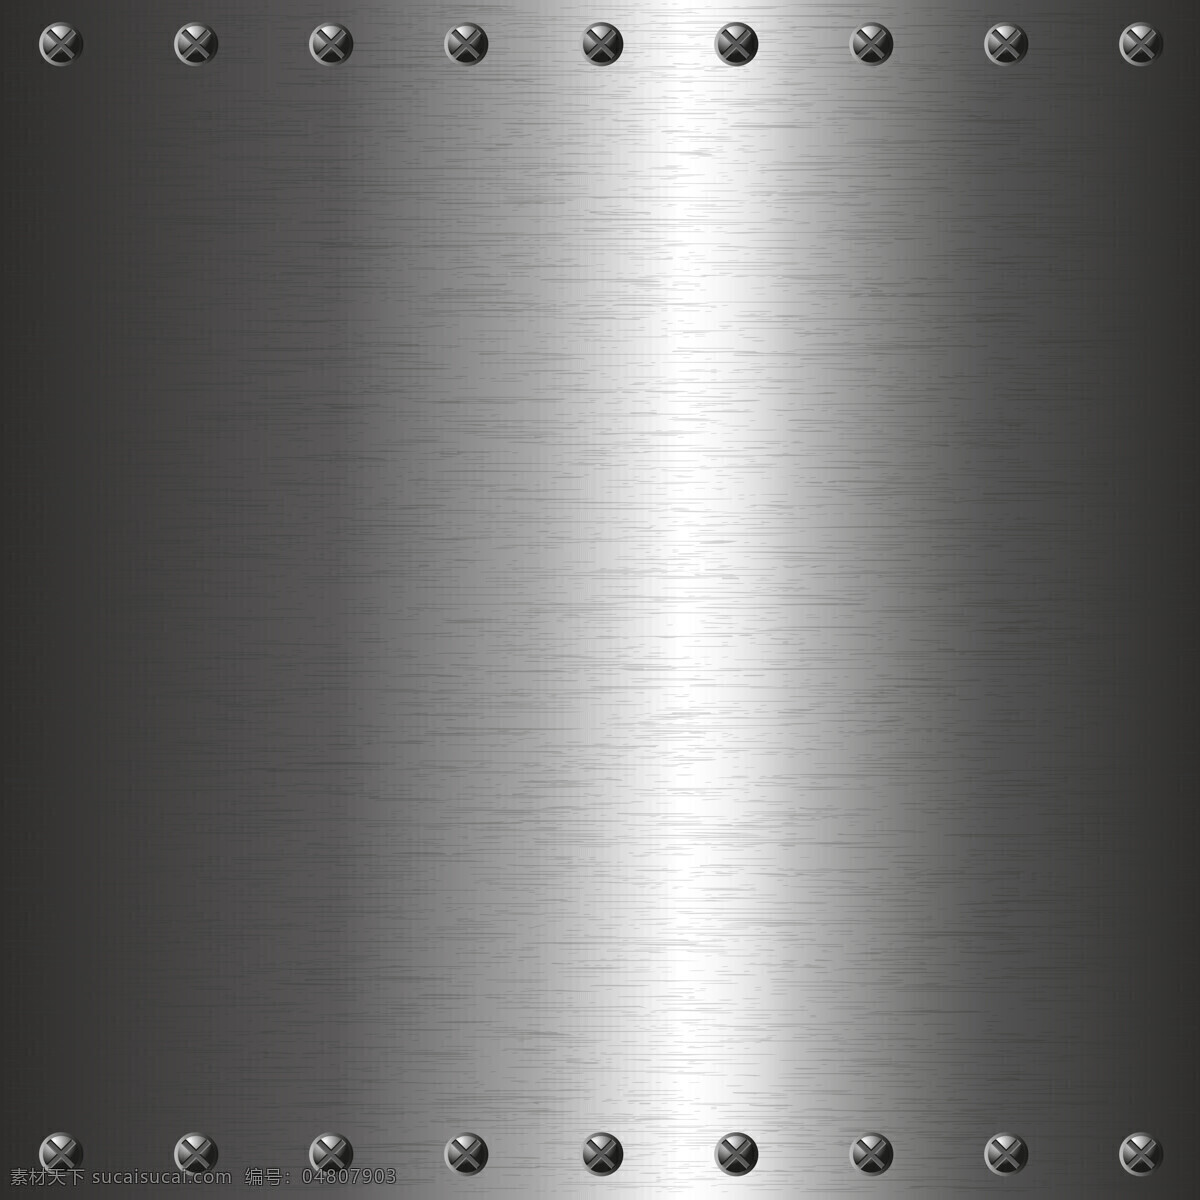 高清 灰度 光亮 金属 质感 图 钢板 大图 金属背景 金属质感 银灰 背景图片